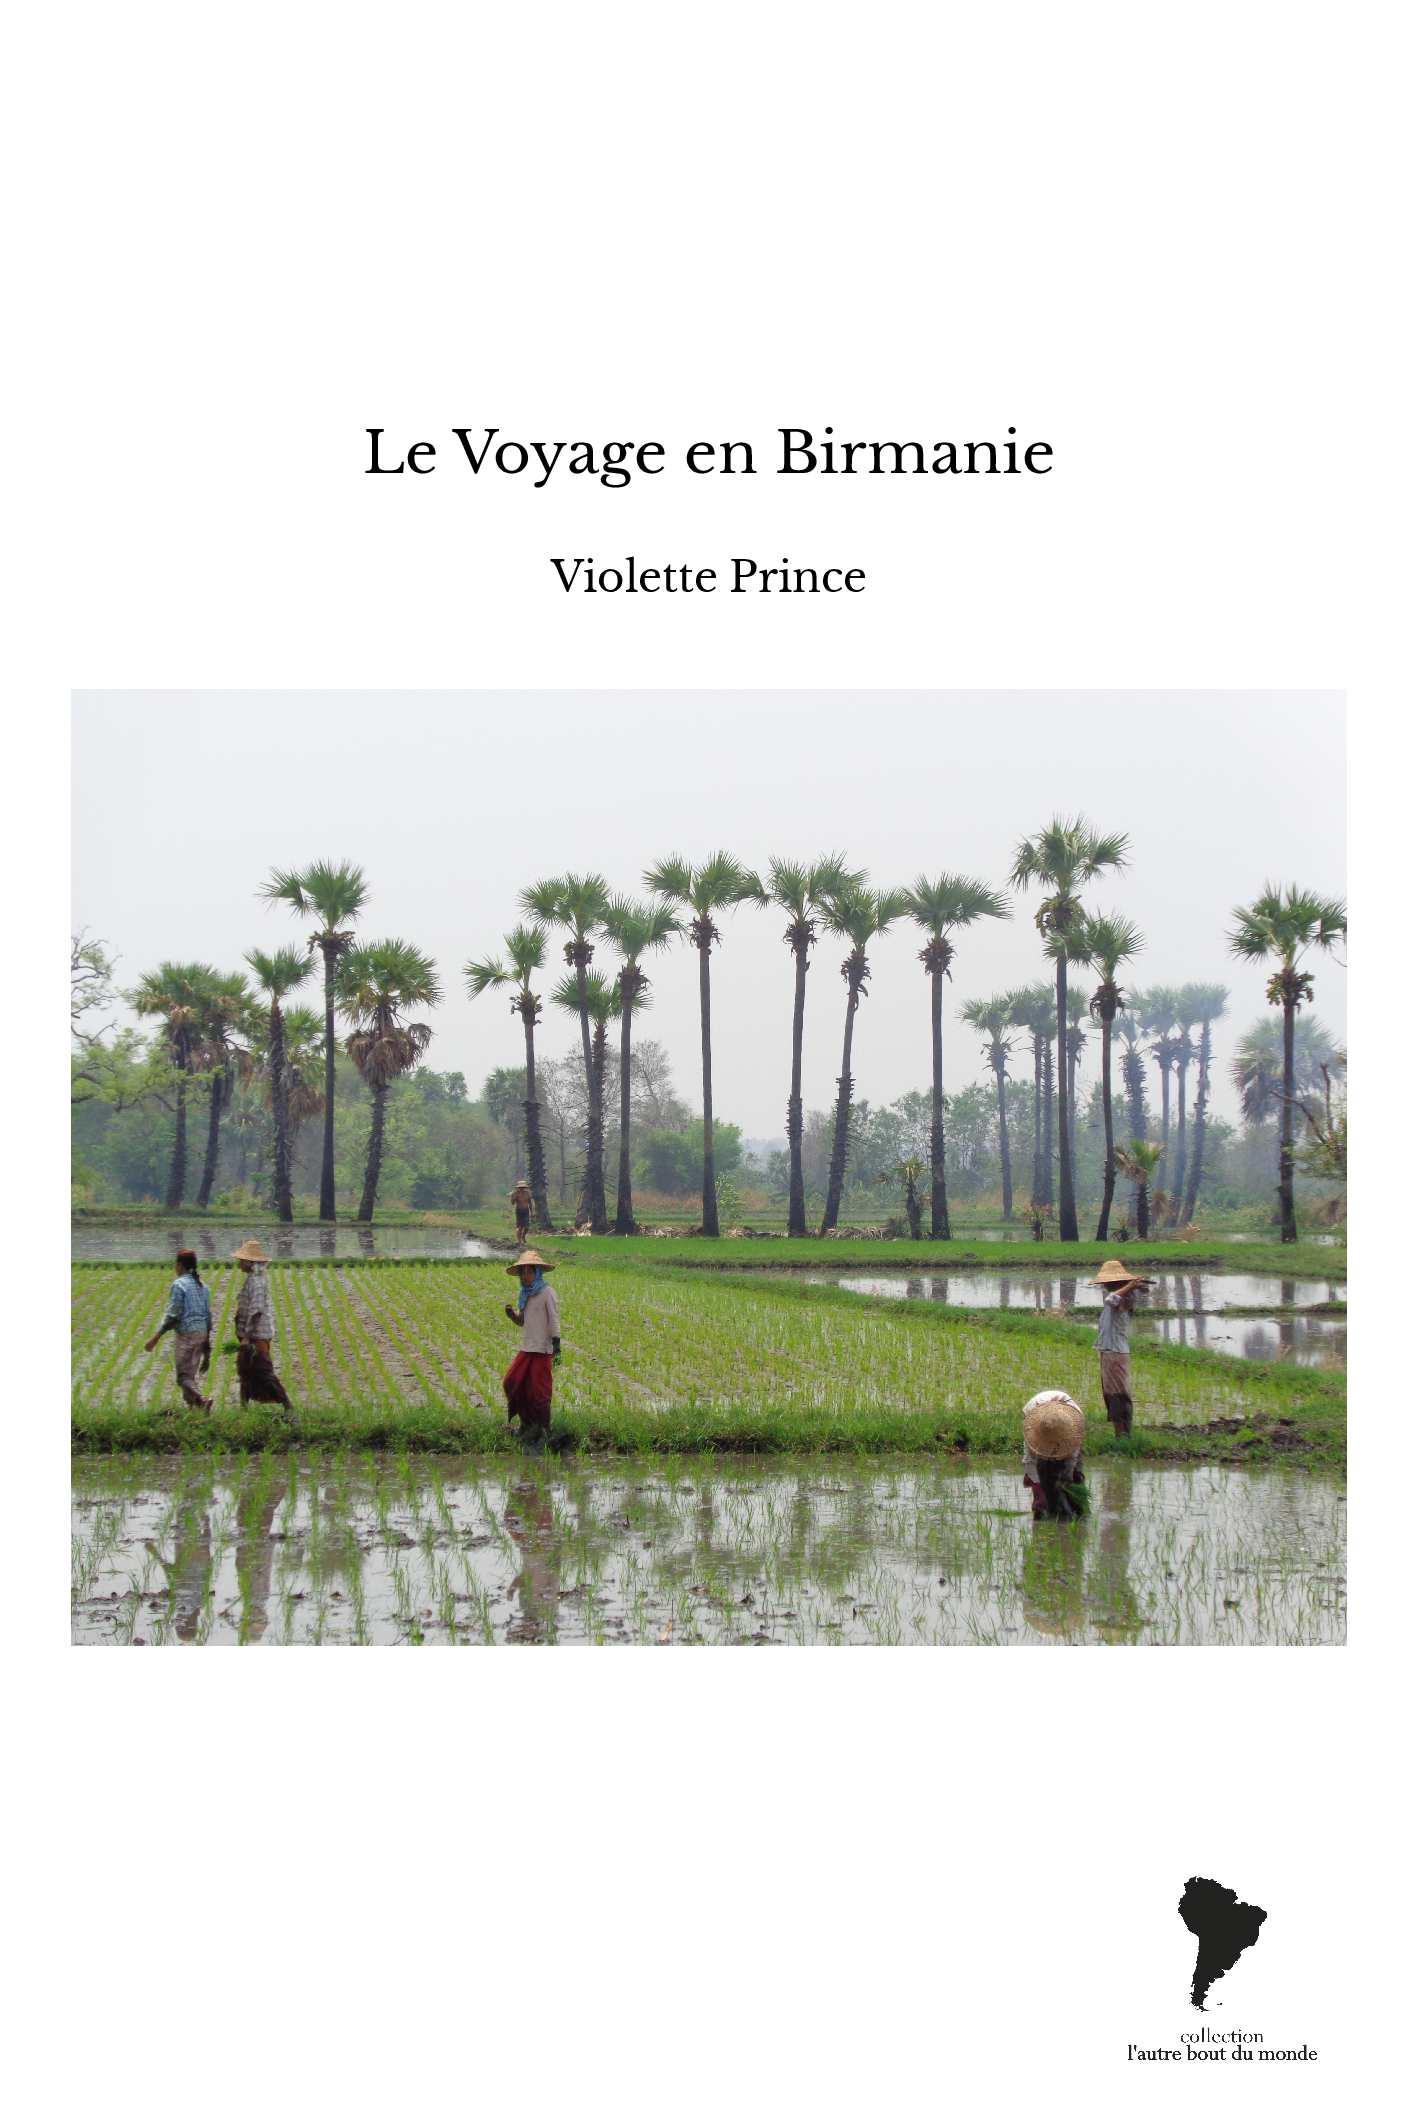 Le Voyage en Birmanie